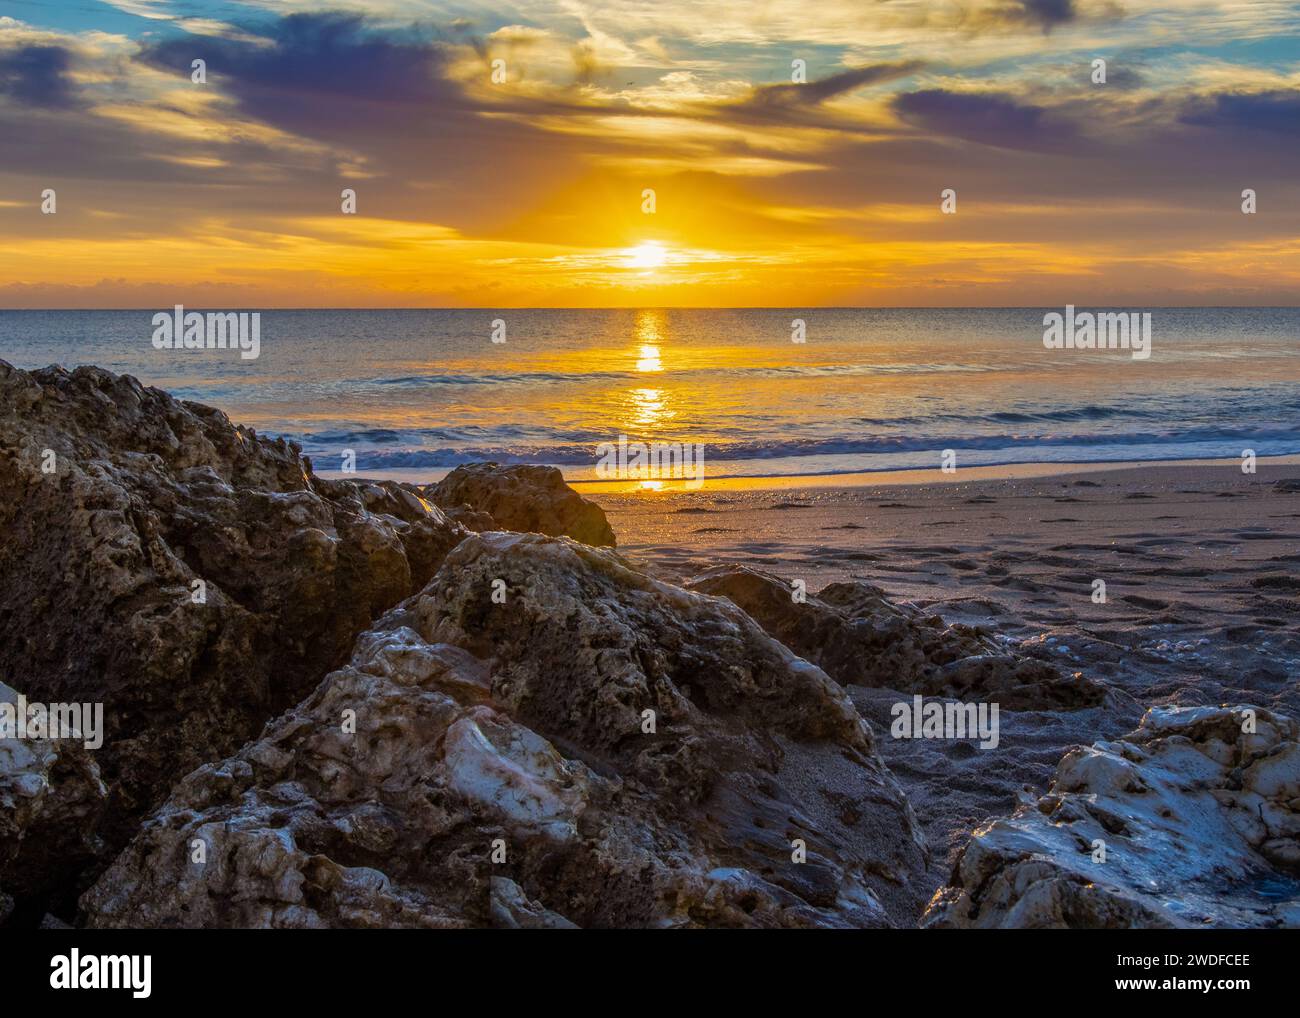 Lever de soleil doré sur un littoral accidenté, parfait pour les thèmes inspirants, la promotion de voyages et la photographie de paysages naturels. Banque D'Images